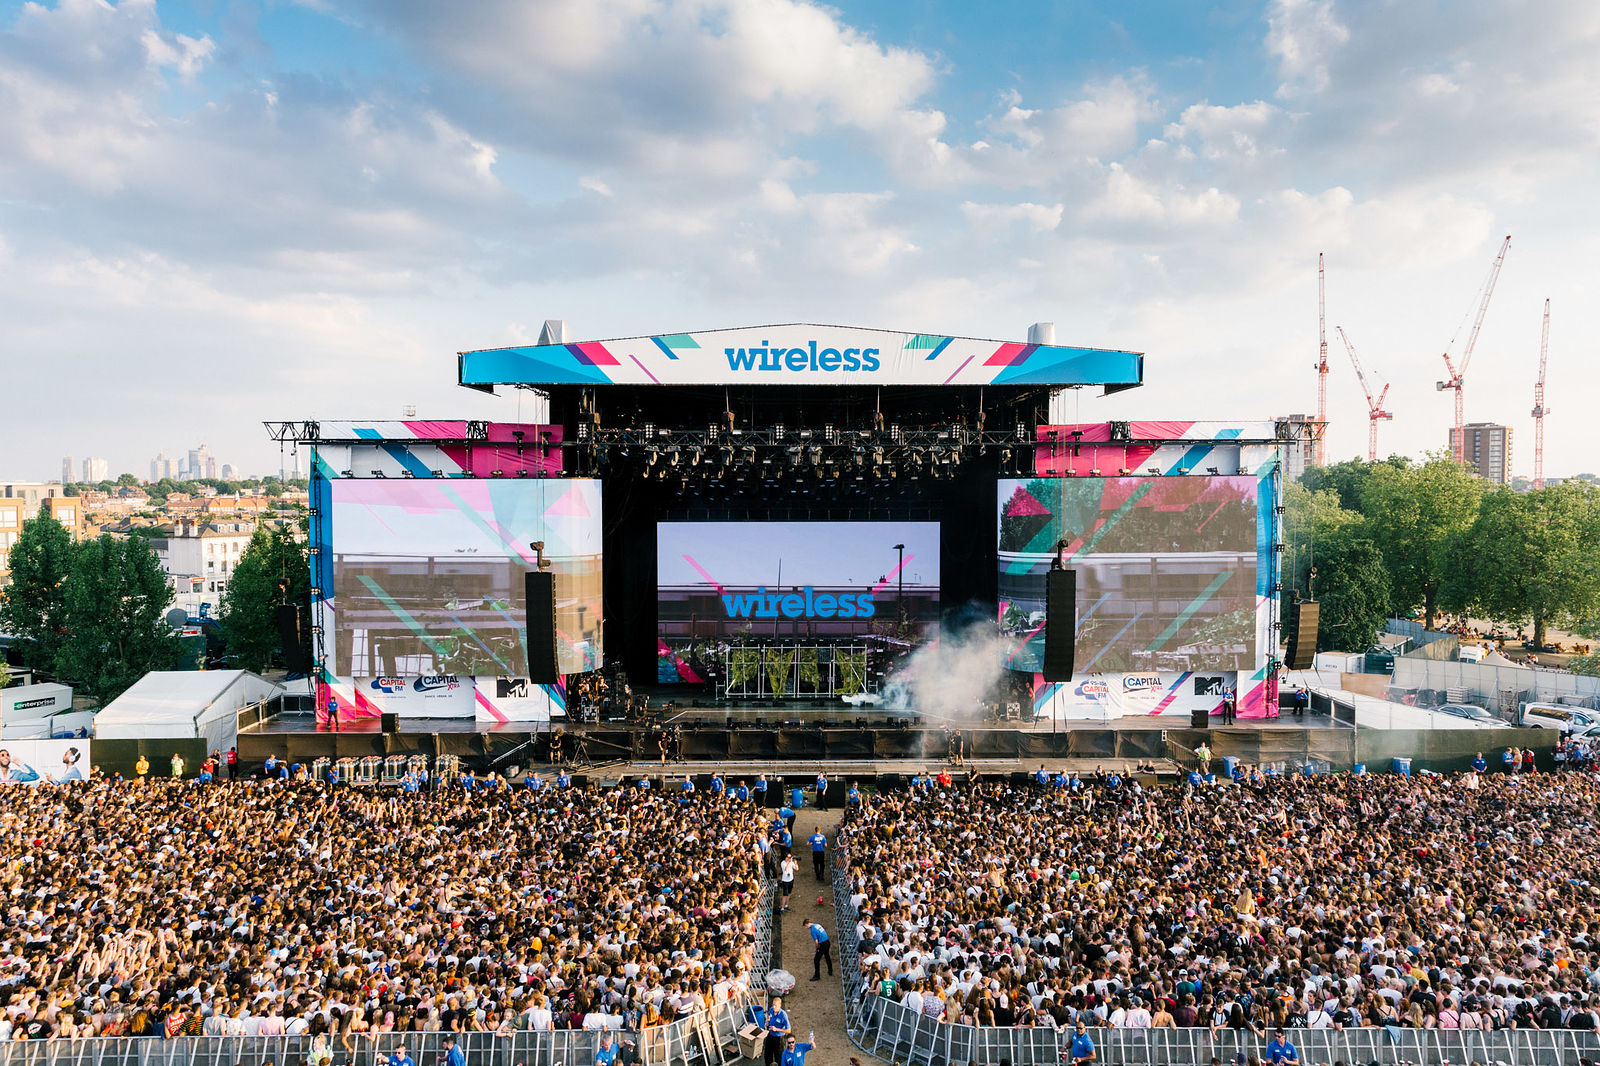 Wireless Festival 2018